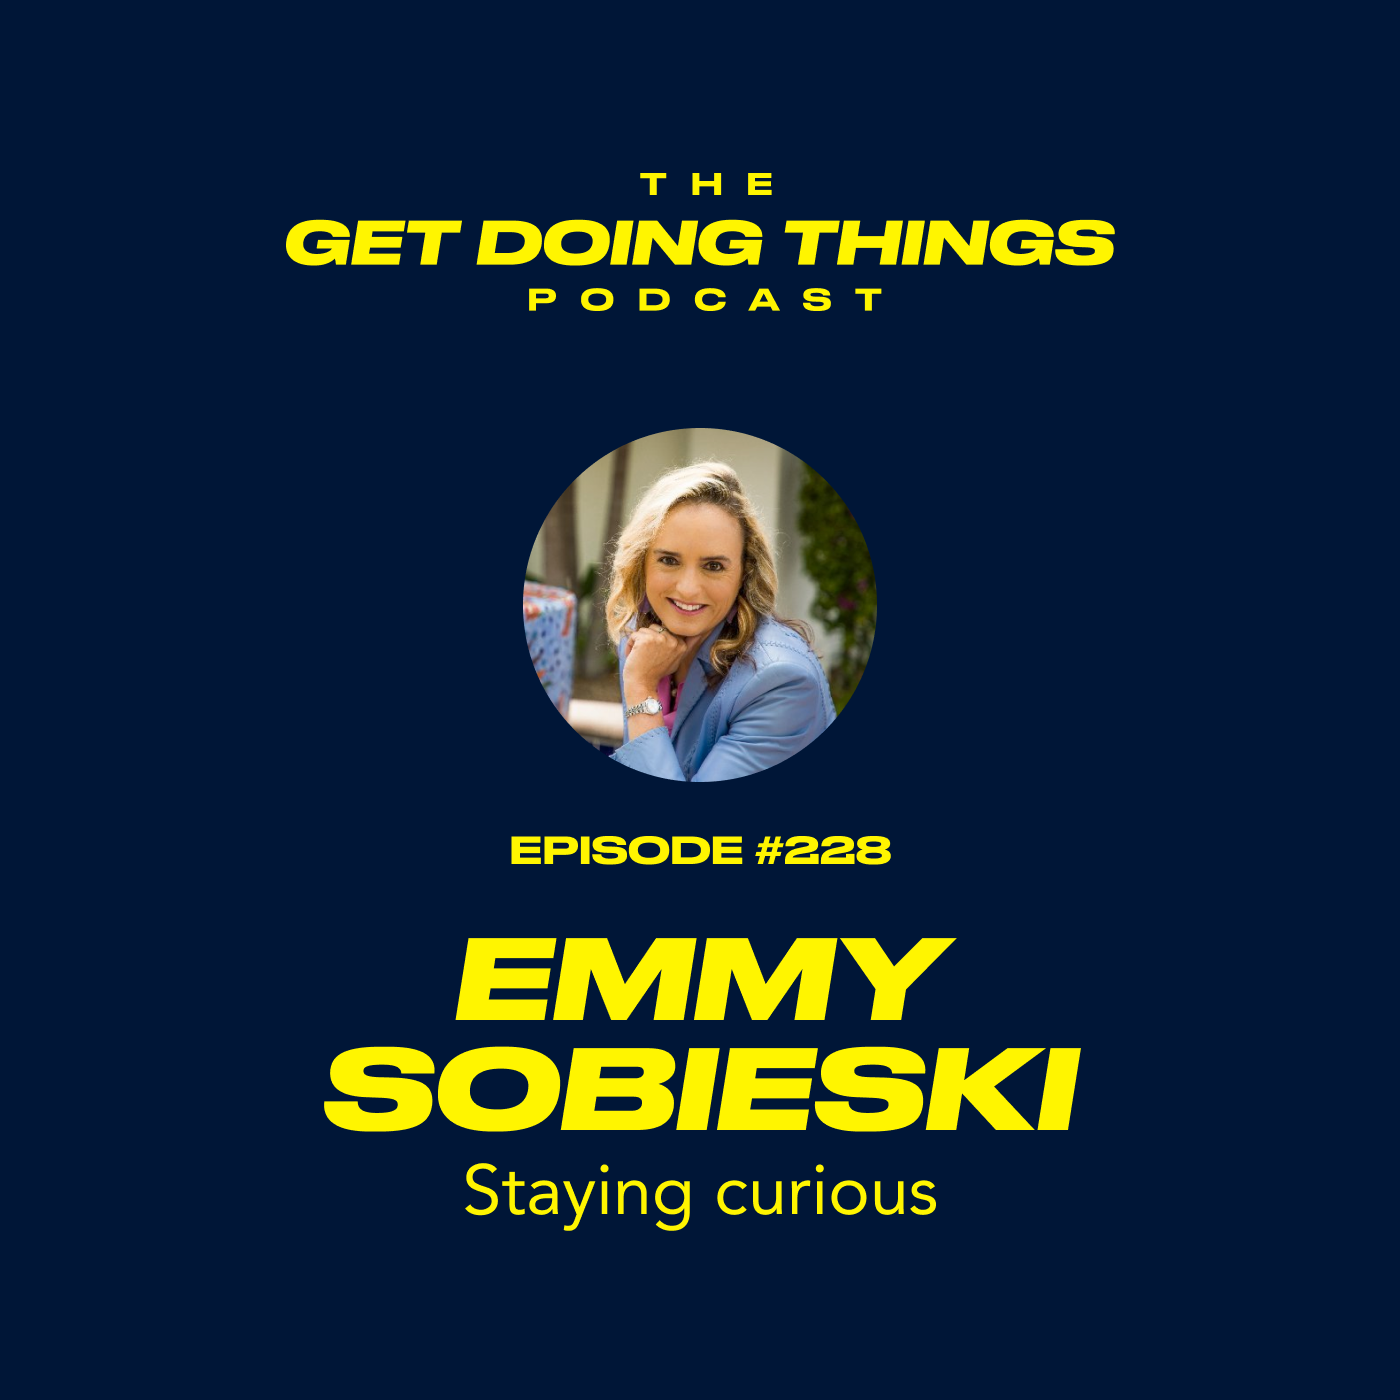 Emmy Sobieski - Staying curious